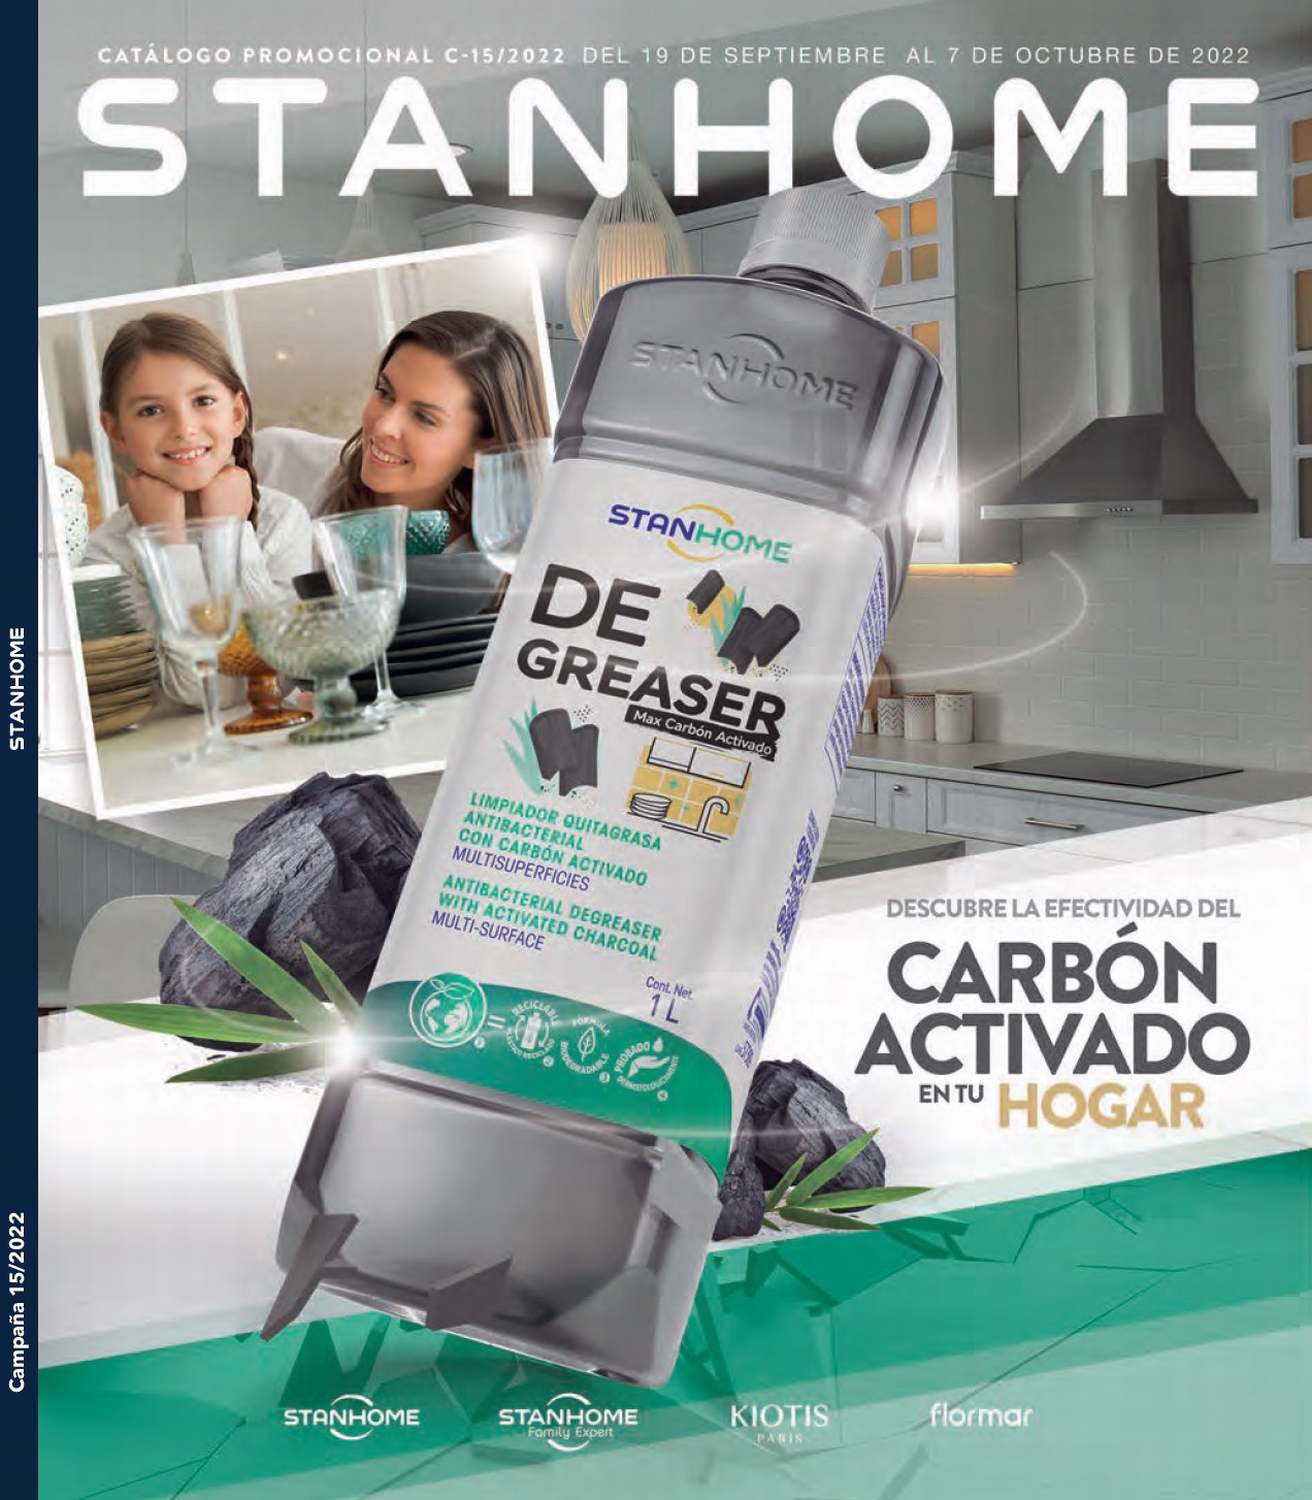 Catalogo Stanhome Campaña 15 2022 México